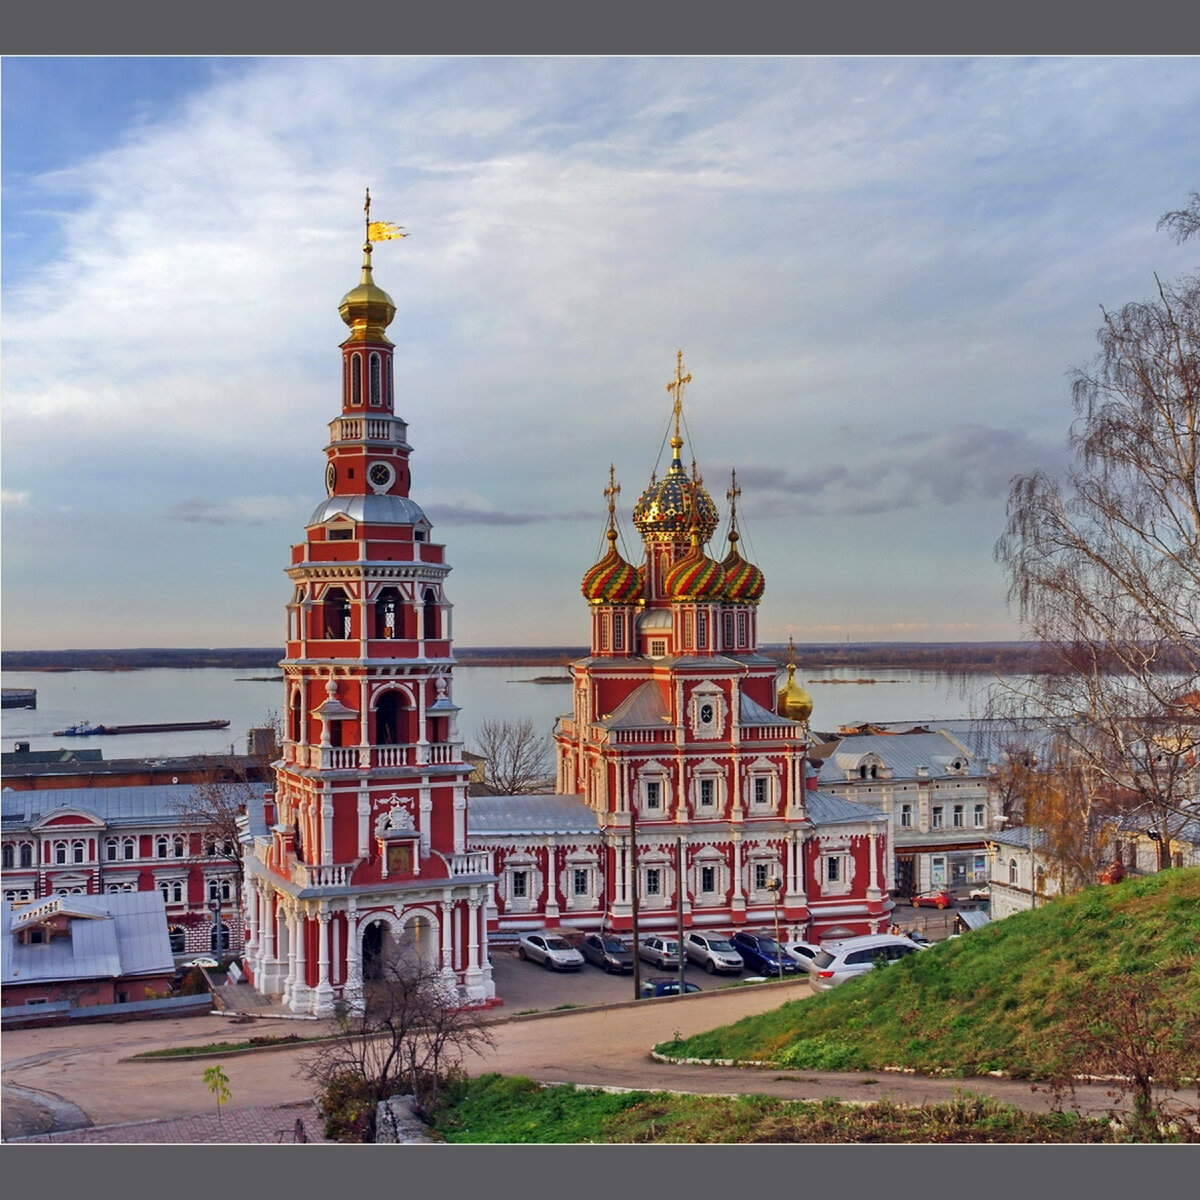 Церковь собора Пресвятой Богородицы Нижний Новгород